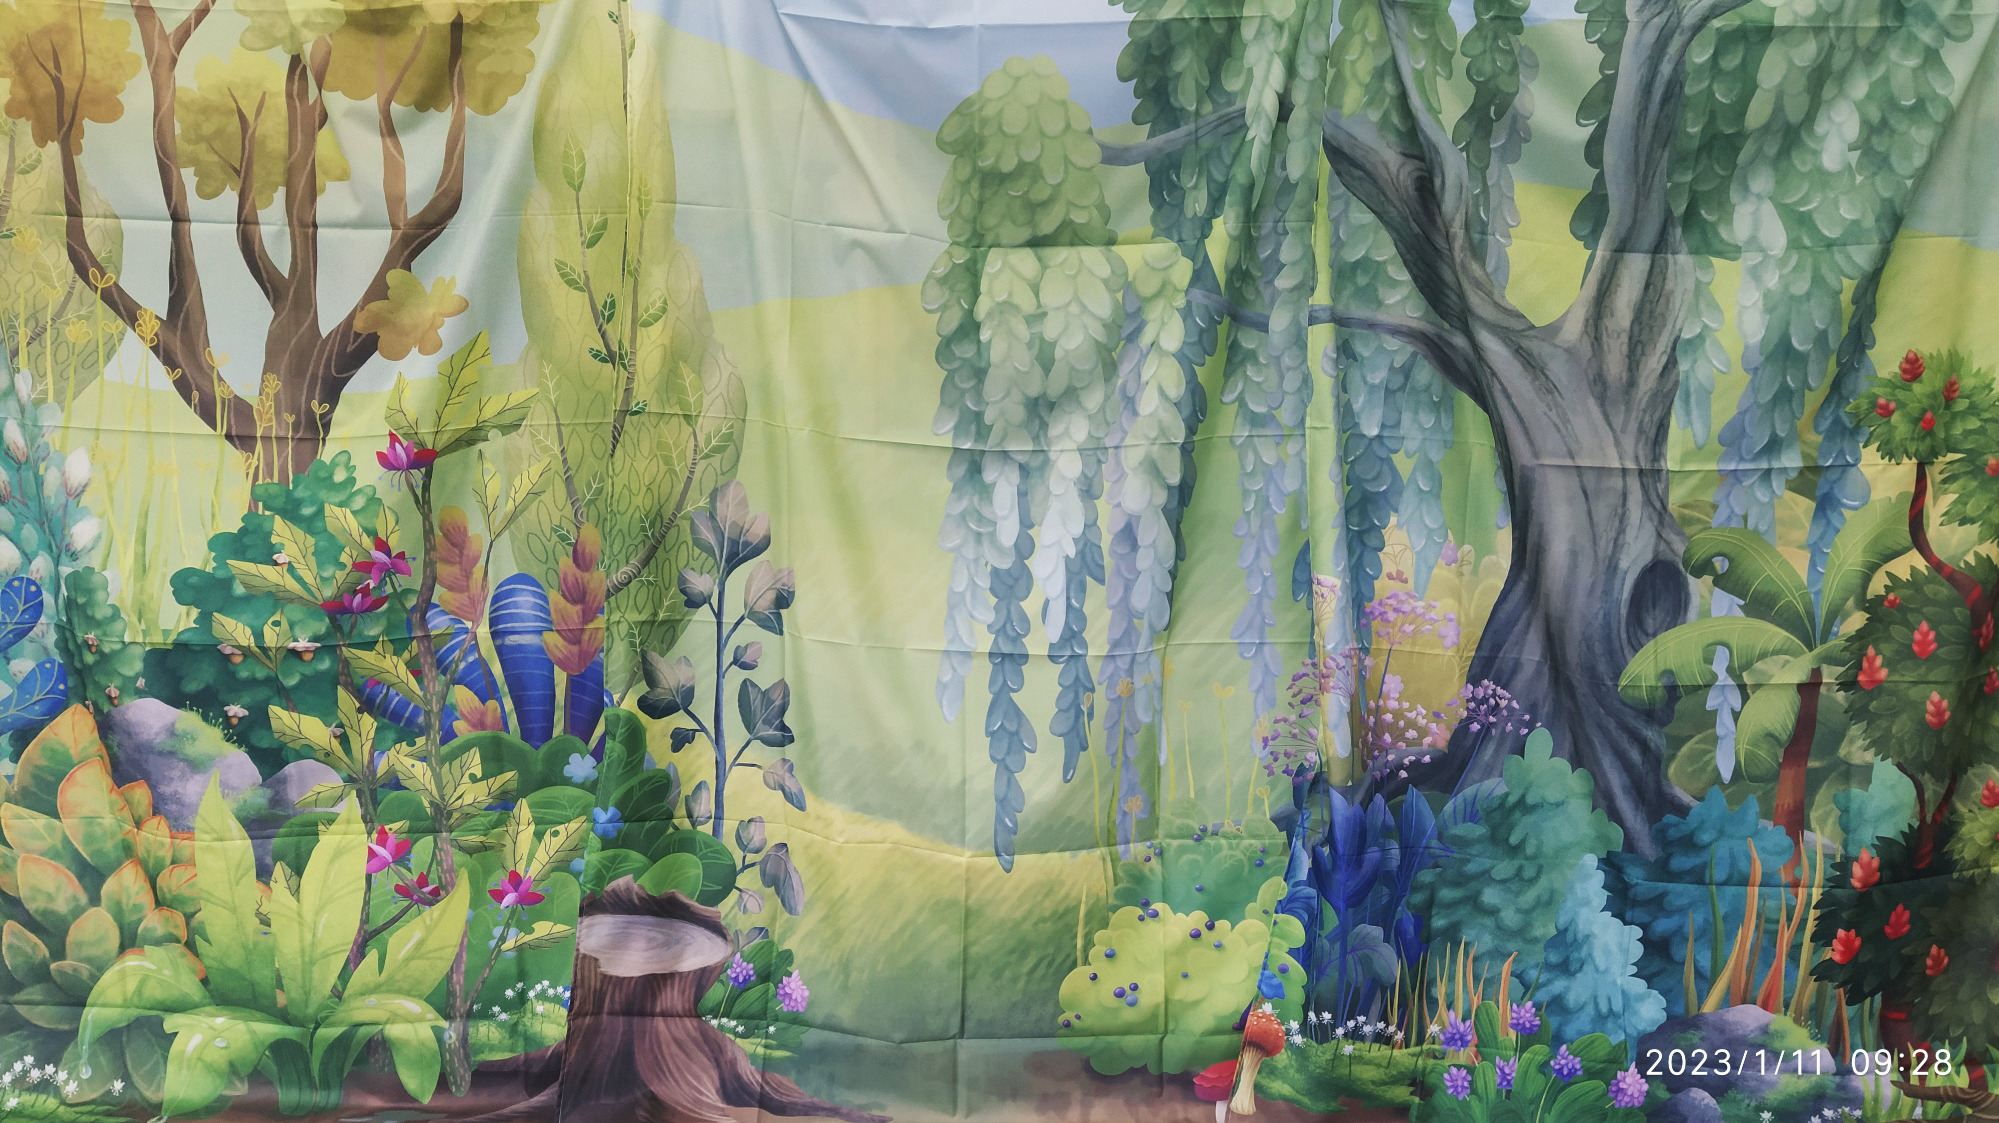 Kurtyna teatralna- tło las: drzewa, kolorowe krzewy, kwiaty.